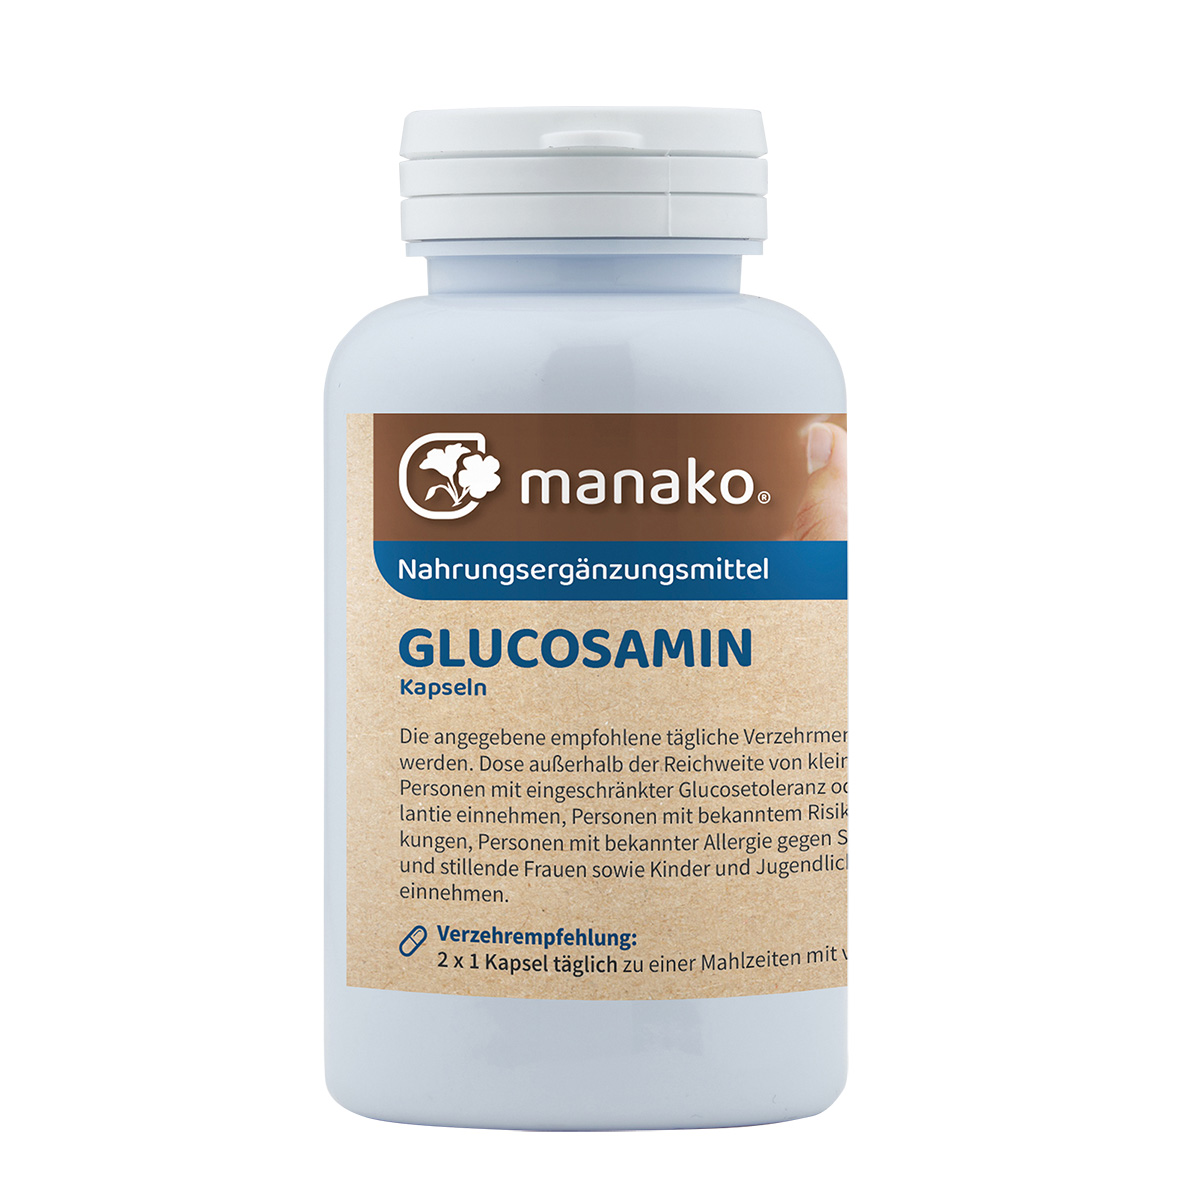 manako Glucosamin Kapseln, 120 Stück, Dose a 90 g